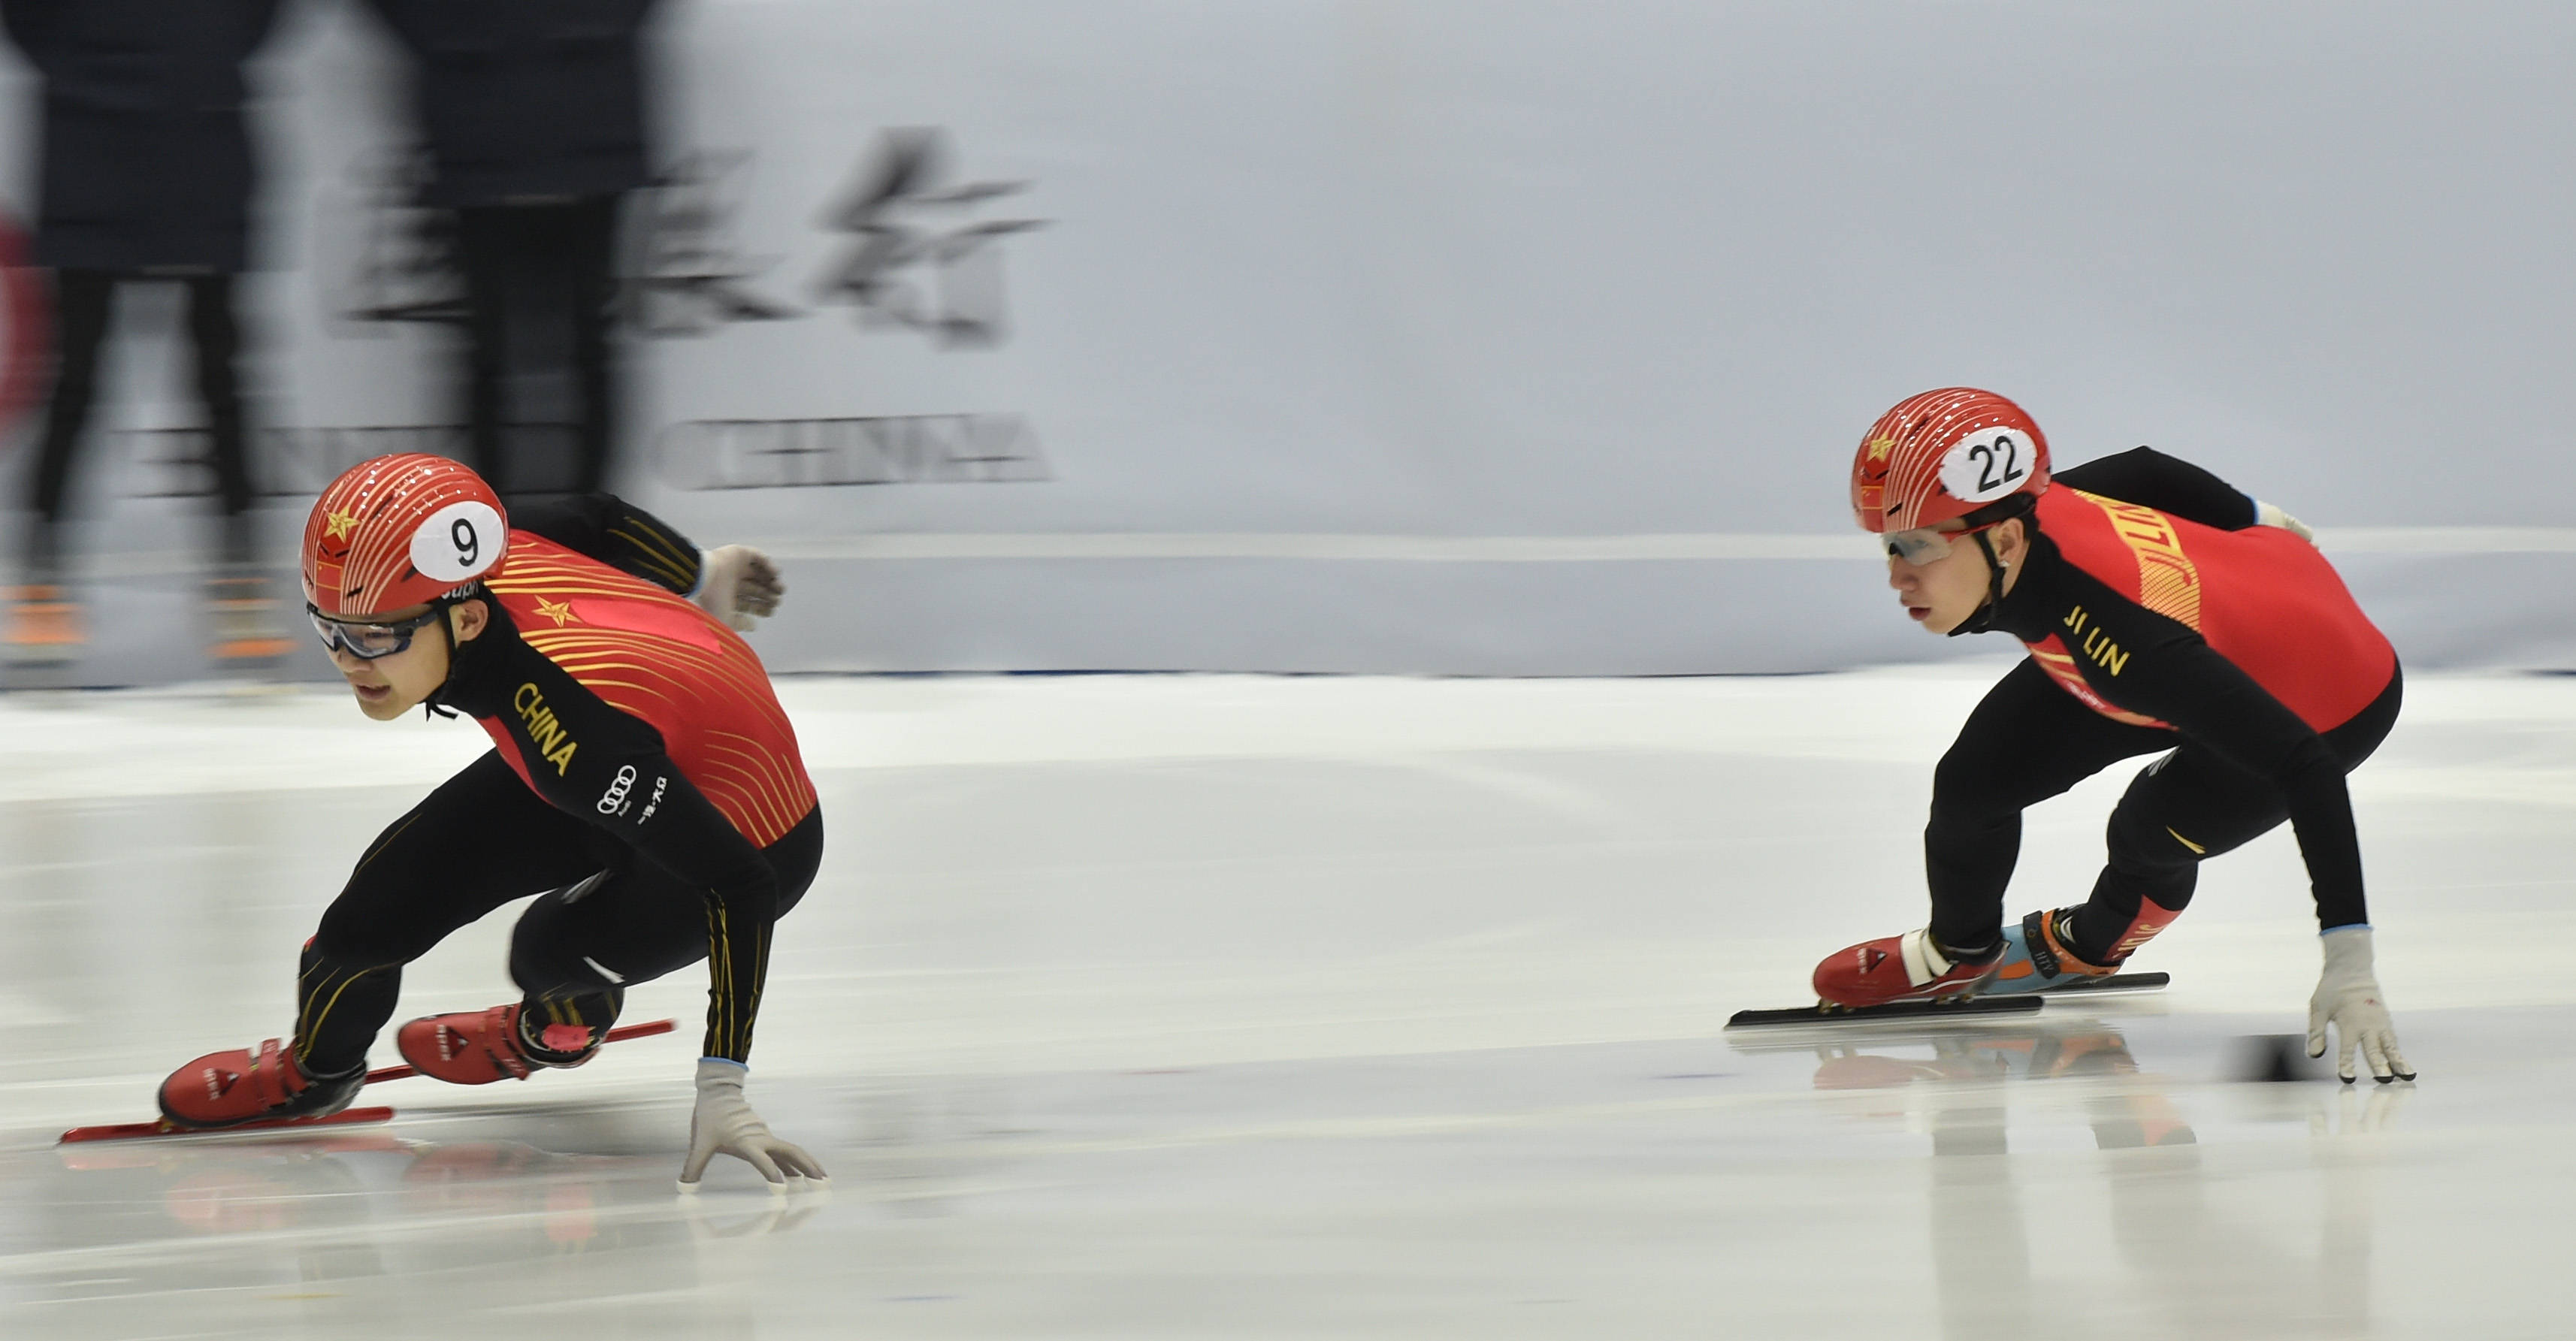 天宇短道速滑运动员图片